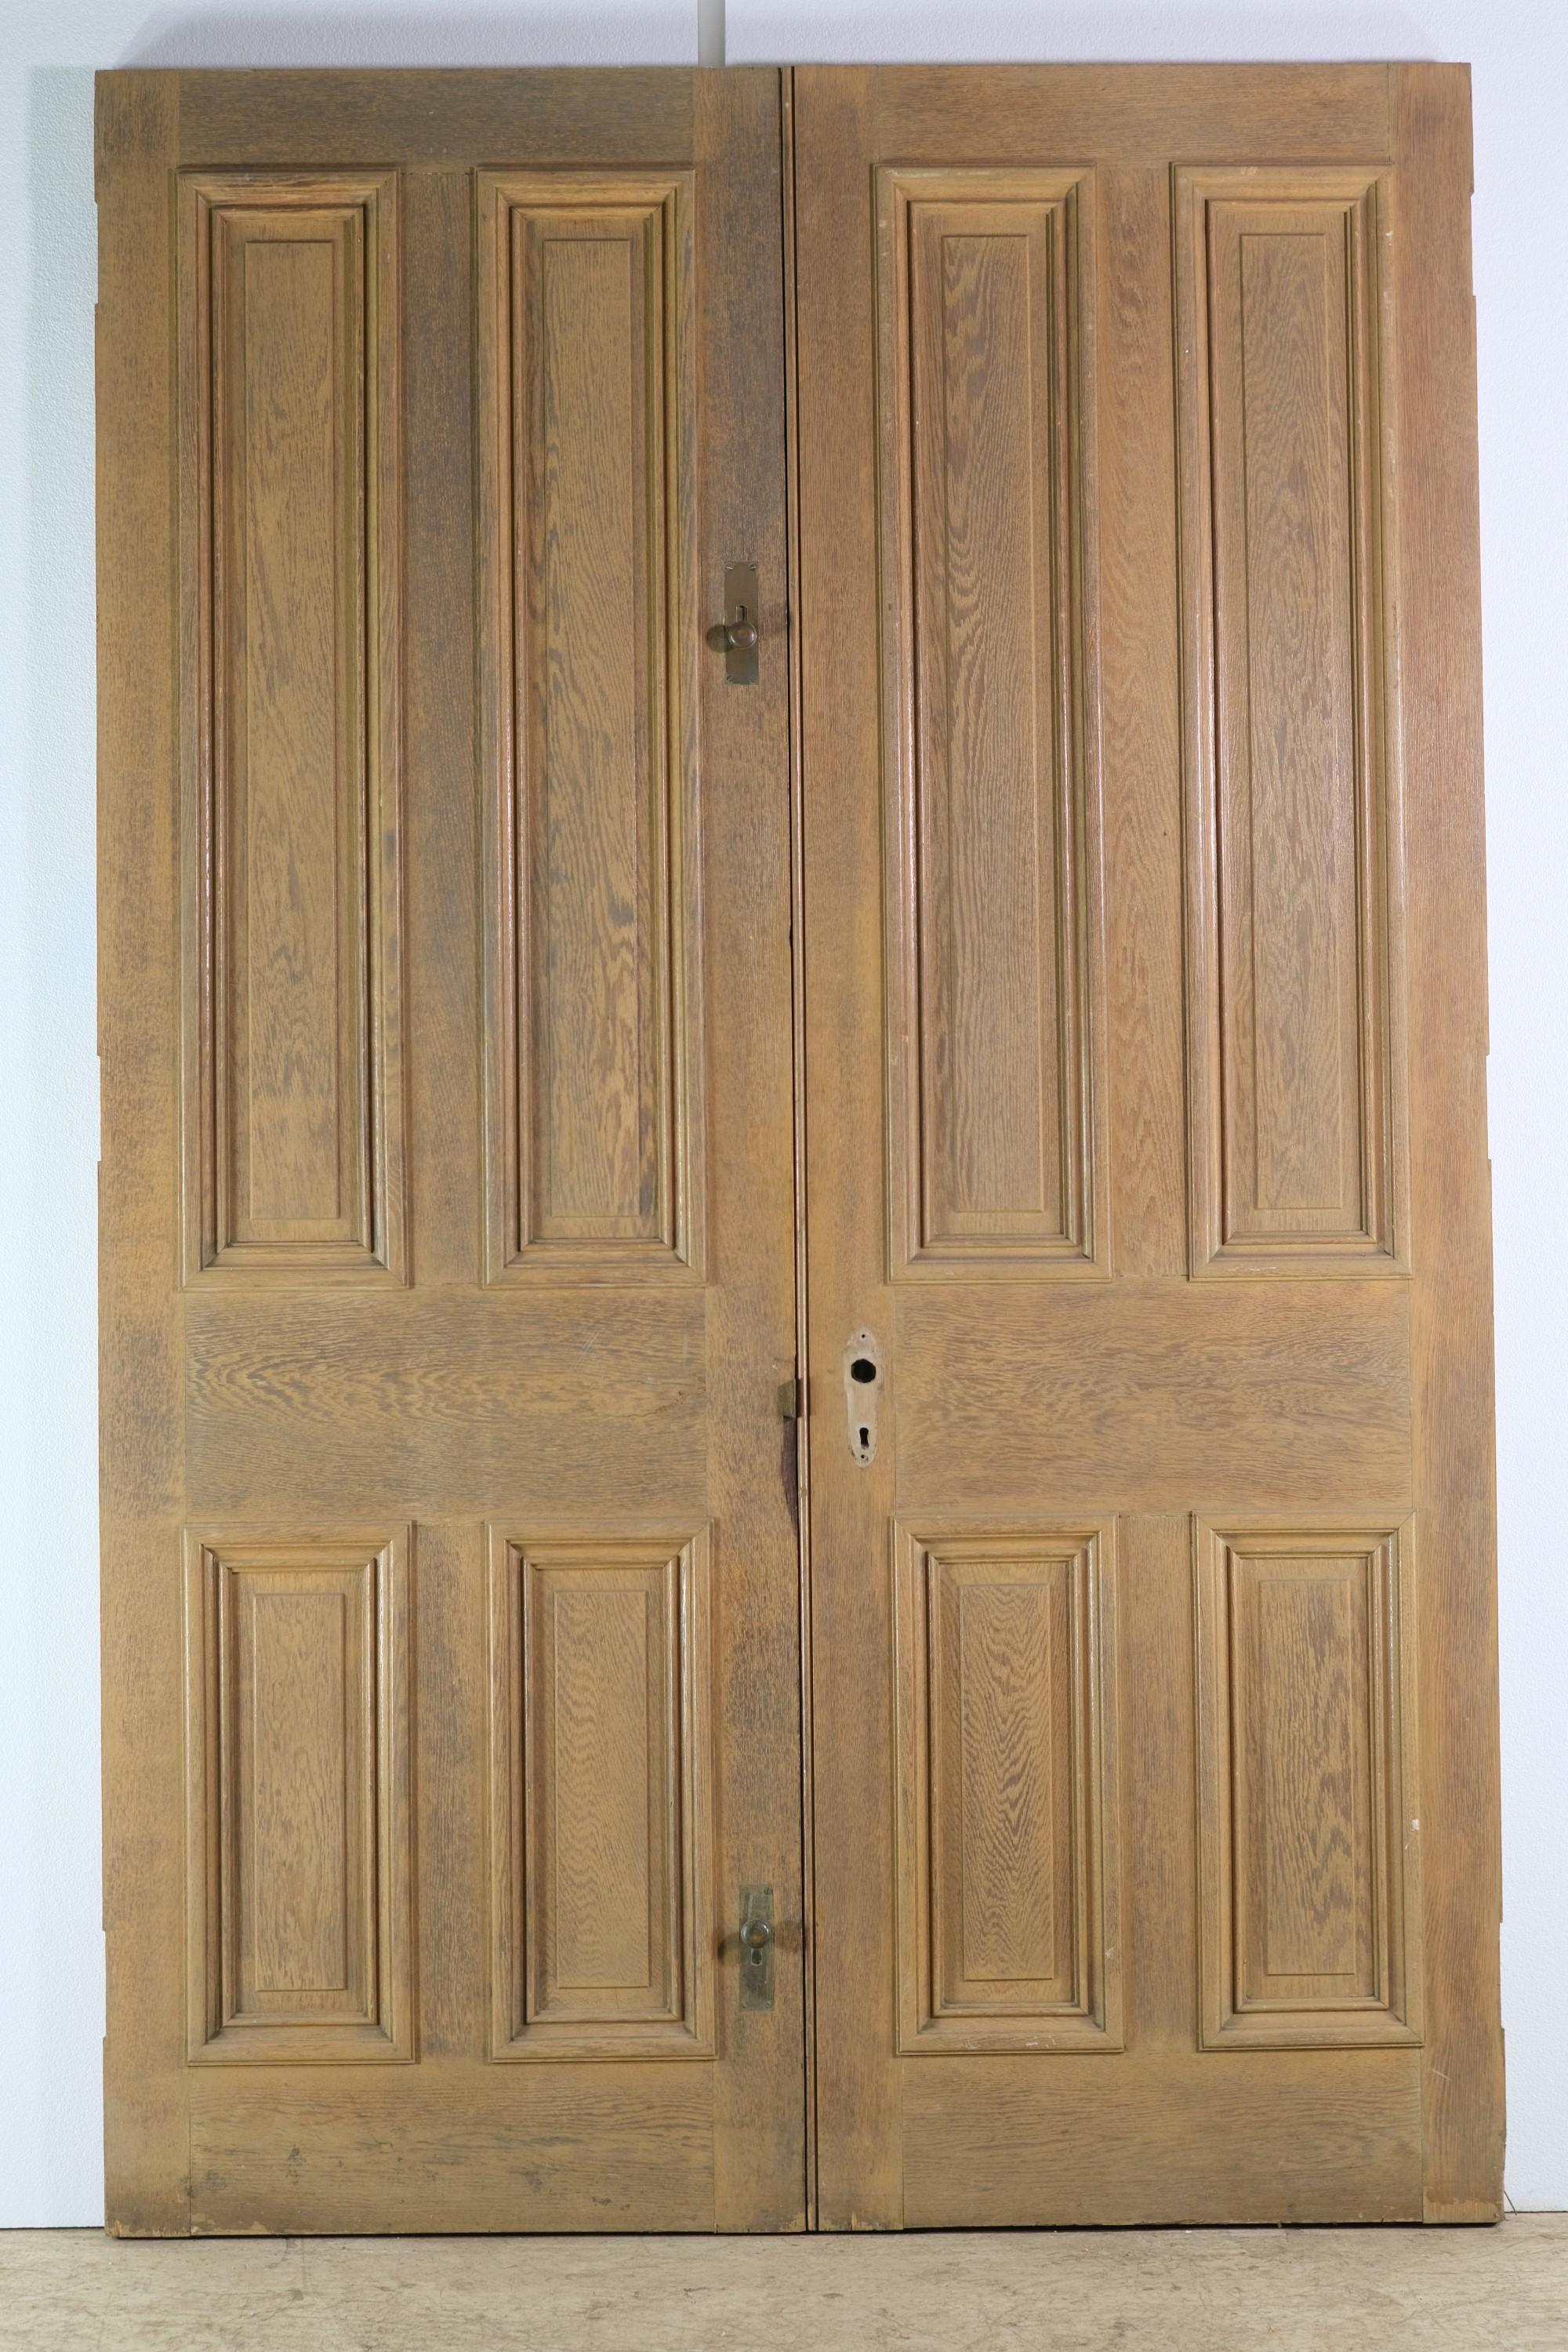 Solid Oak 4 Pane Passage Double Doors 89.5 x 57.5 1